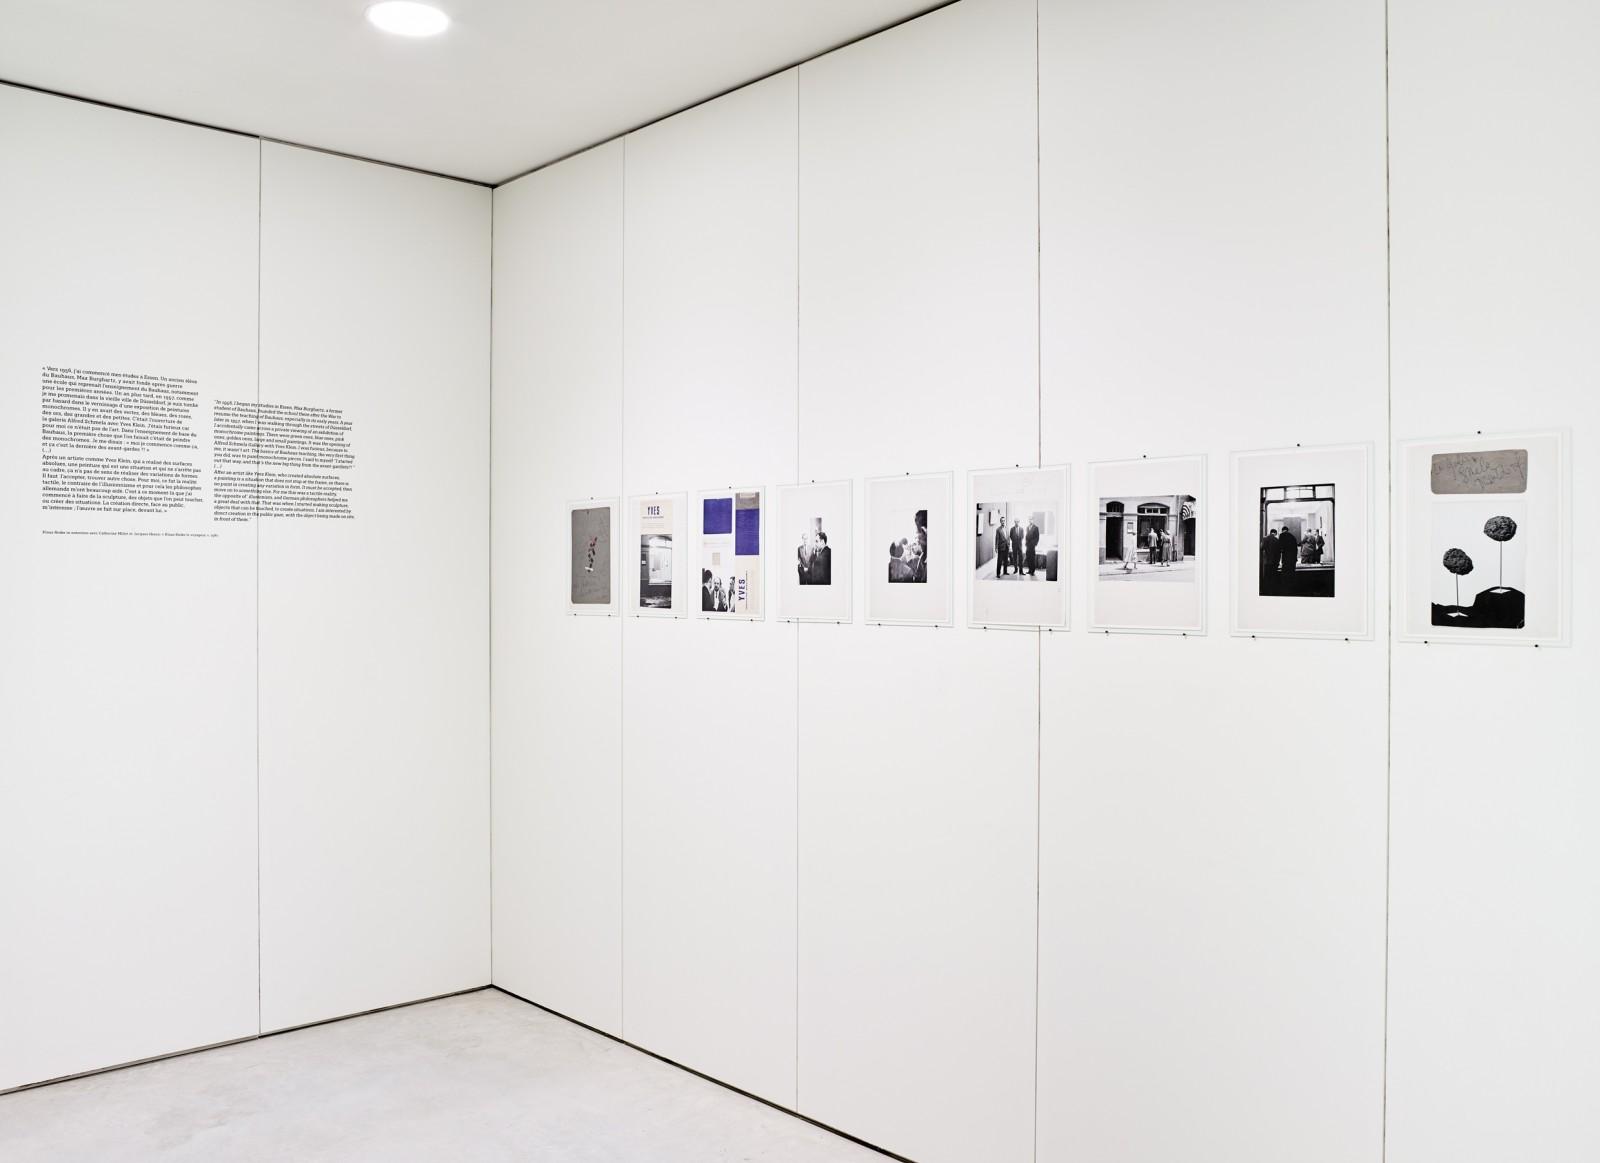 View of the exhibition "Klaus Rinke. Düsseldorf mon amour", Centre de Création Contemporaine Olivier Debré, 2017